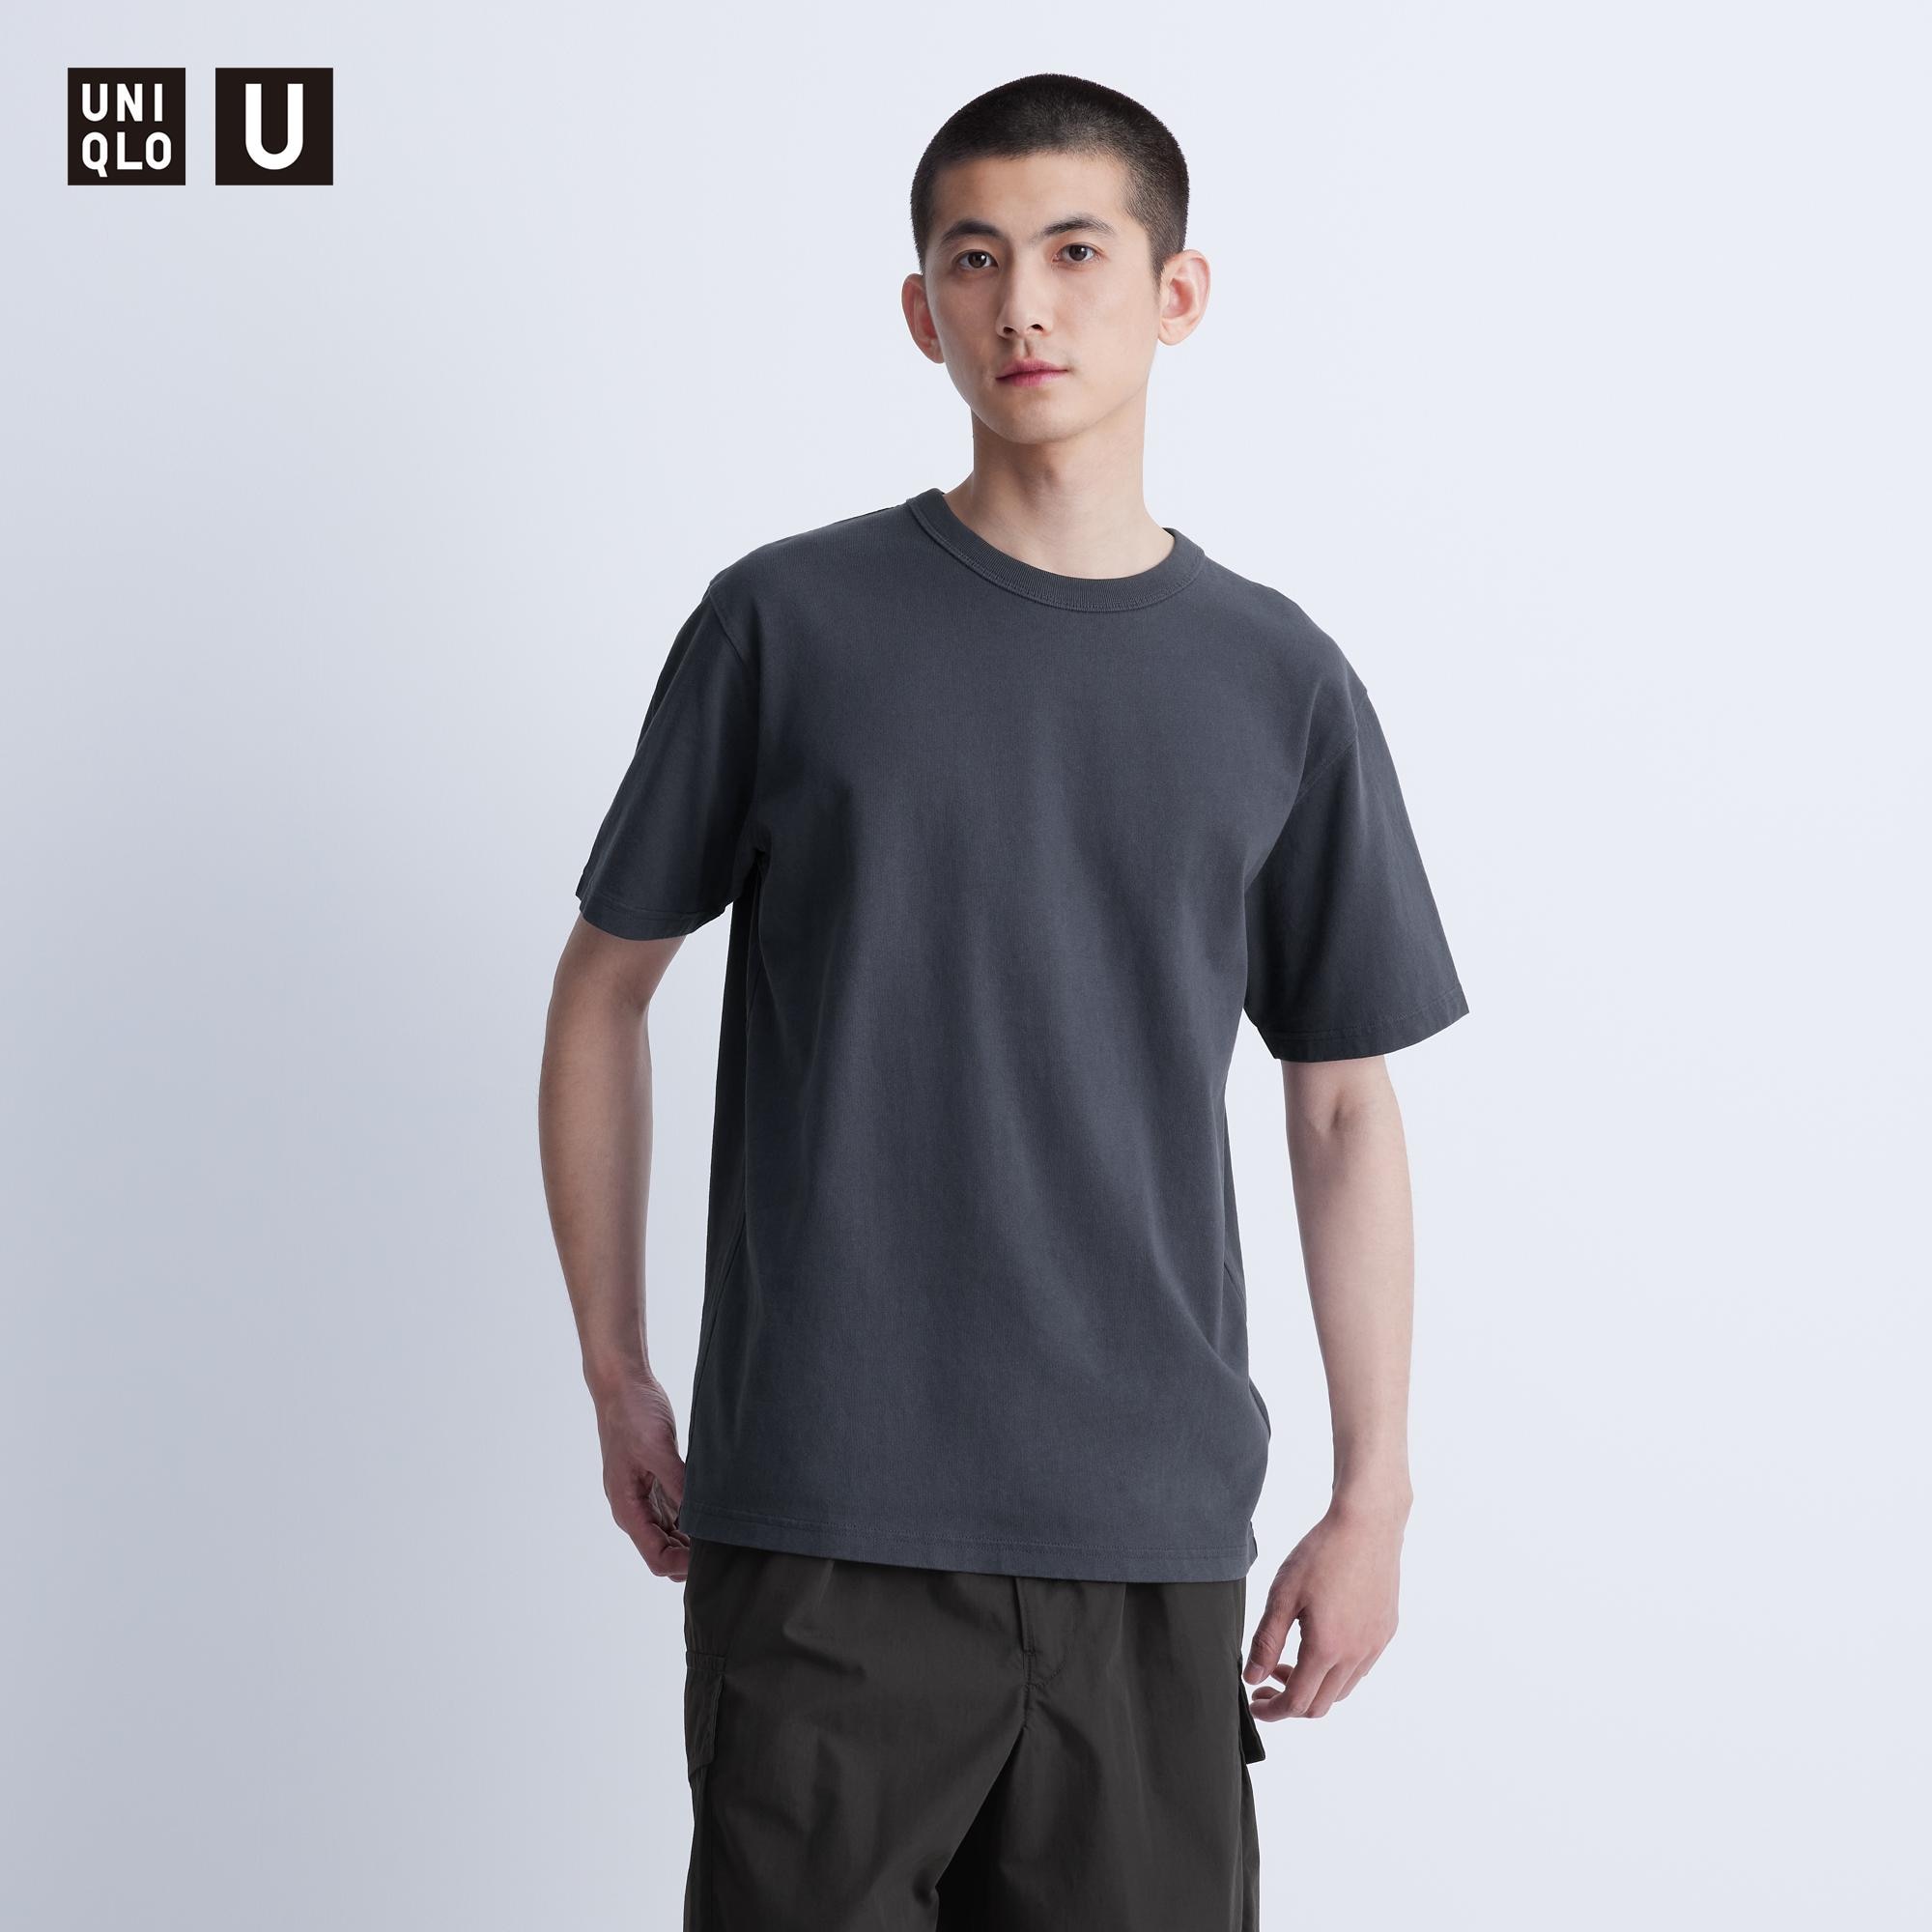 UNIQLO ユニクロ 七分袖 ライトグリーン カットソー Tシャツ Mサイズ